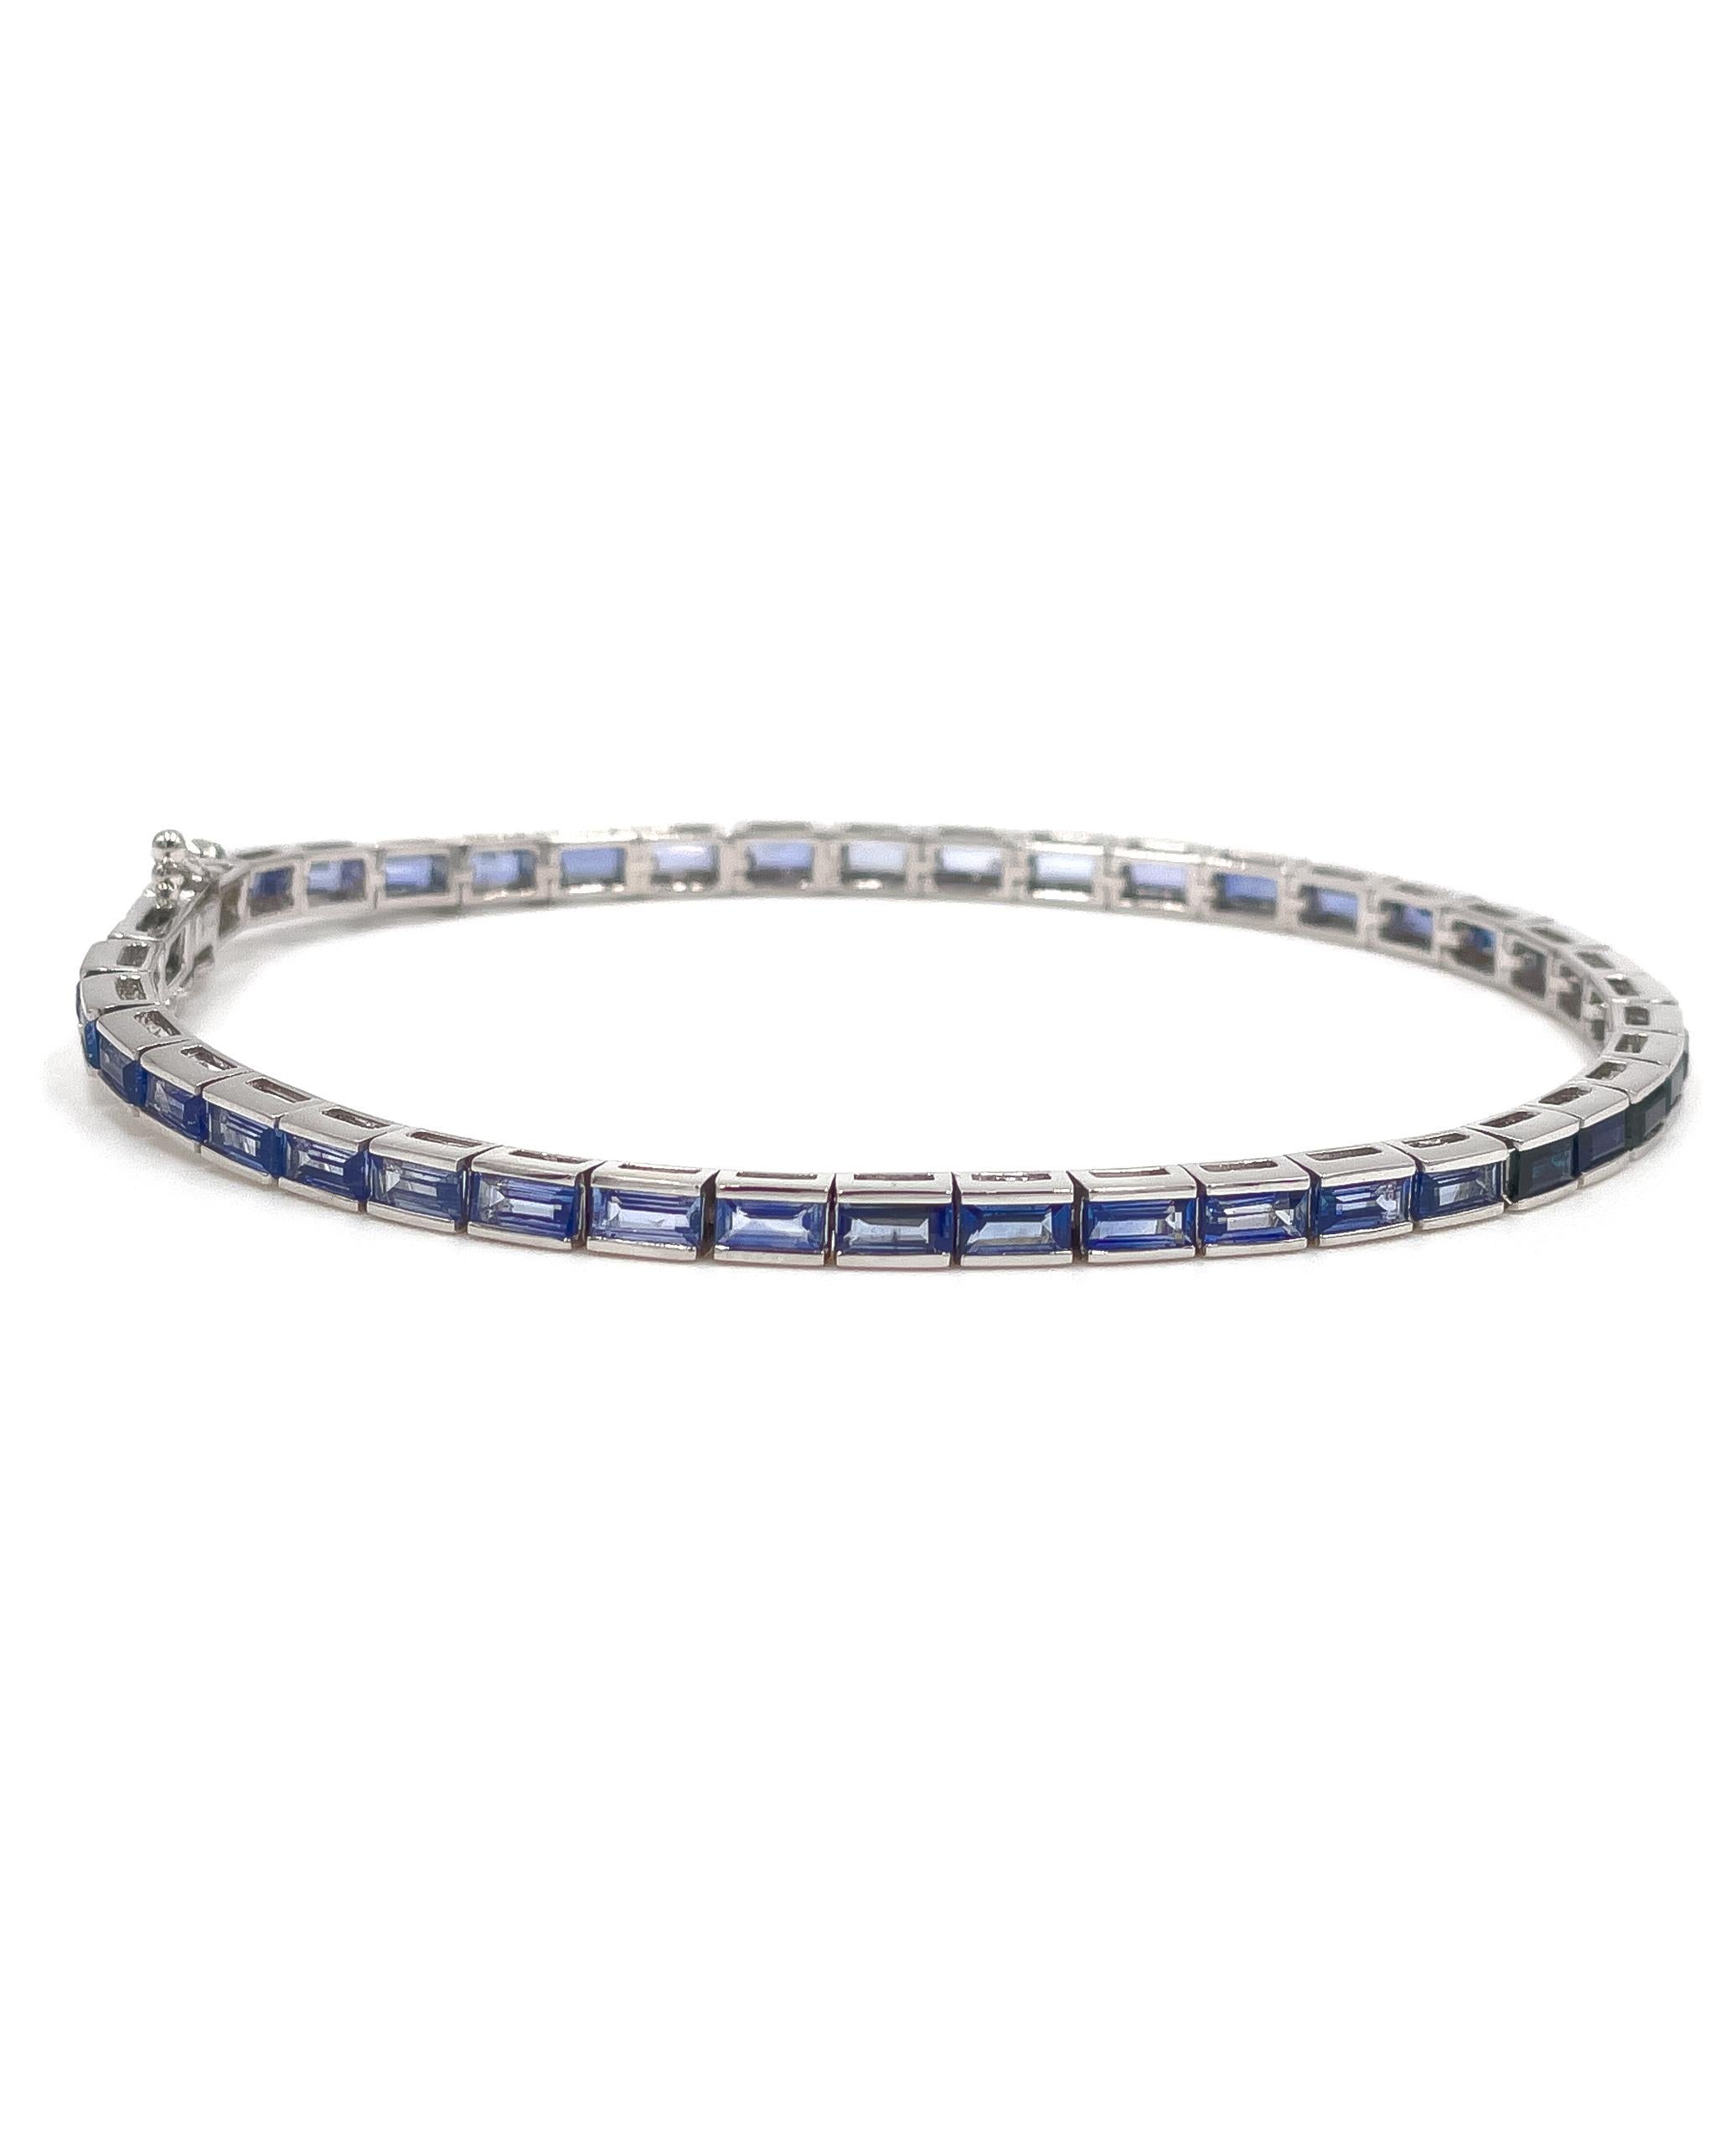 Bracelet en or blanc 14K serti de saphirs bleus graduellement colorés. 

Les saphirs pèsent au total 6,23 carats. 

Le bracelet est muni d'un fermoir en forme de boîte et de deux fermoirs de sécurité en forme de 8 de chaque côté.

Longueur du